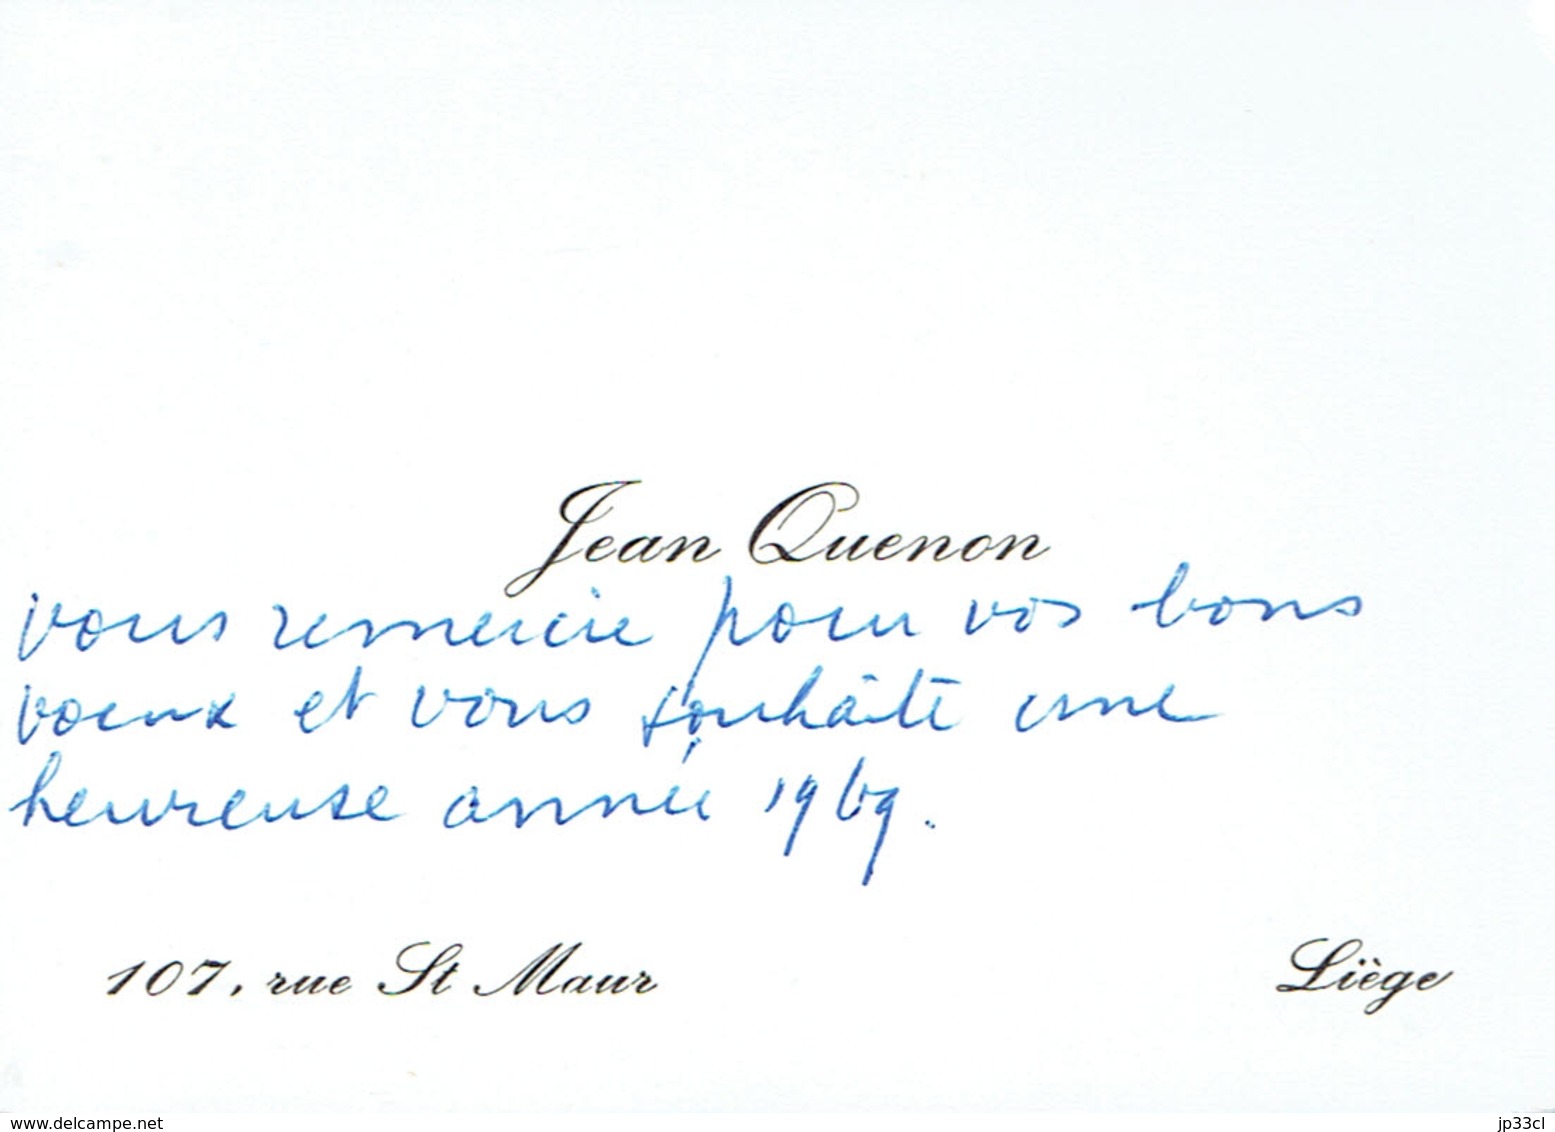 Ancienne Carte De Visite Autographe De Jean Quenon, Professeur à L'ULG, Rue St Maur, Liège (vers 1968) - Cartes De Visite